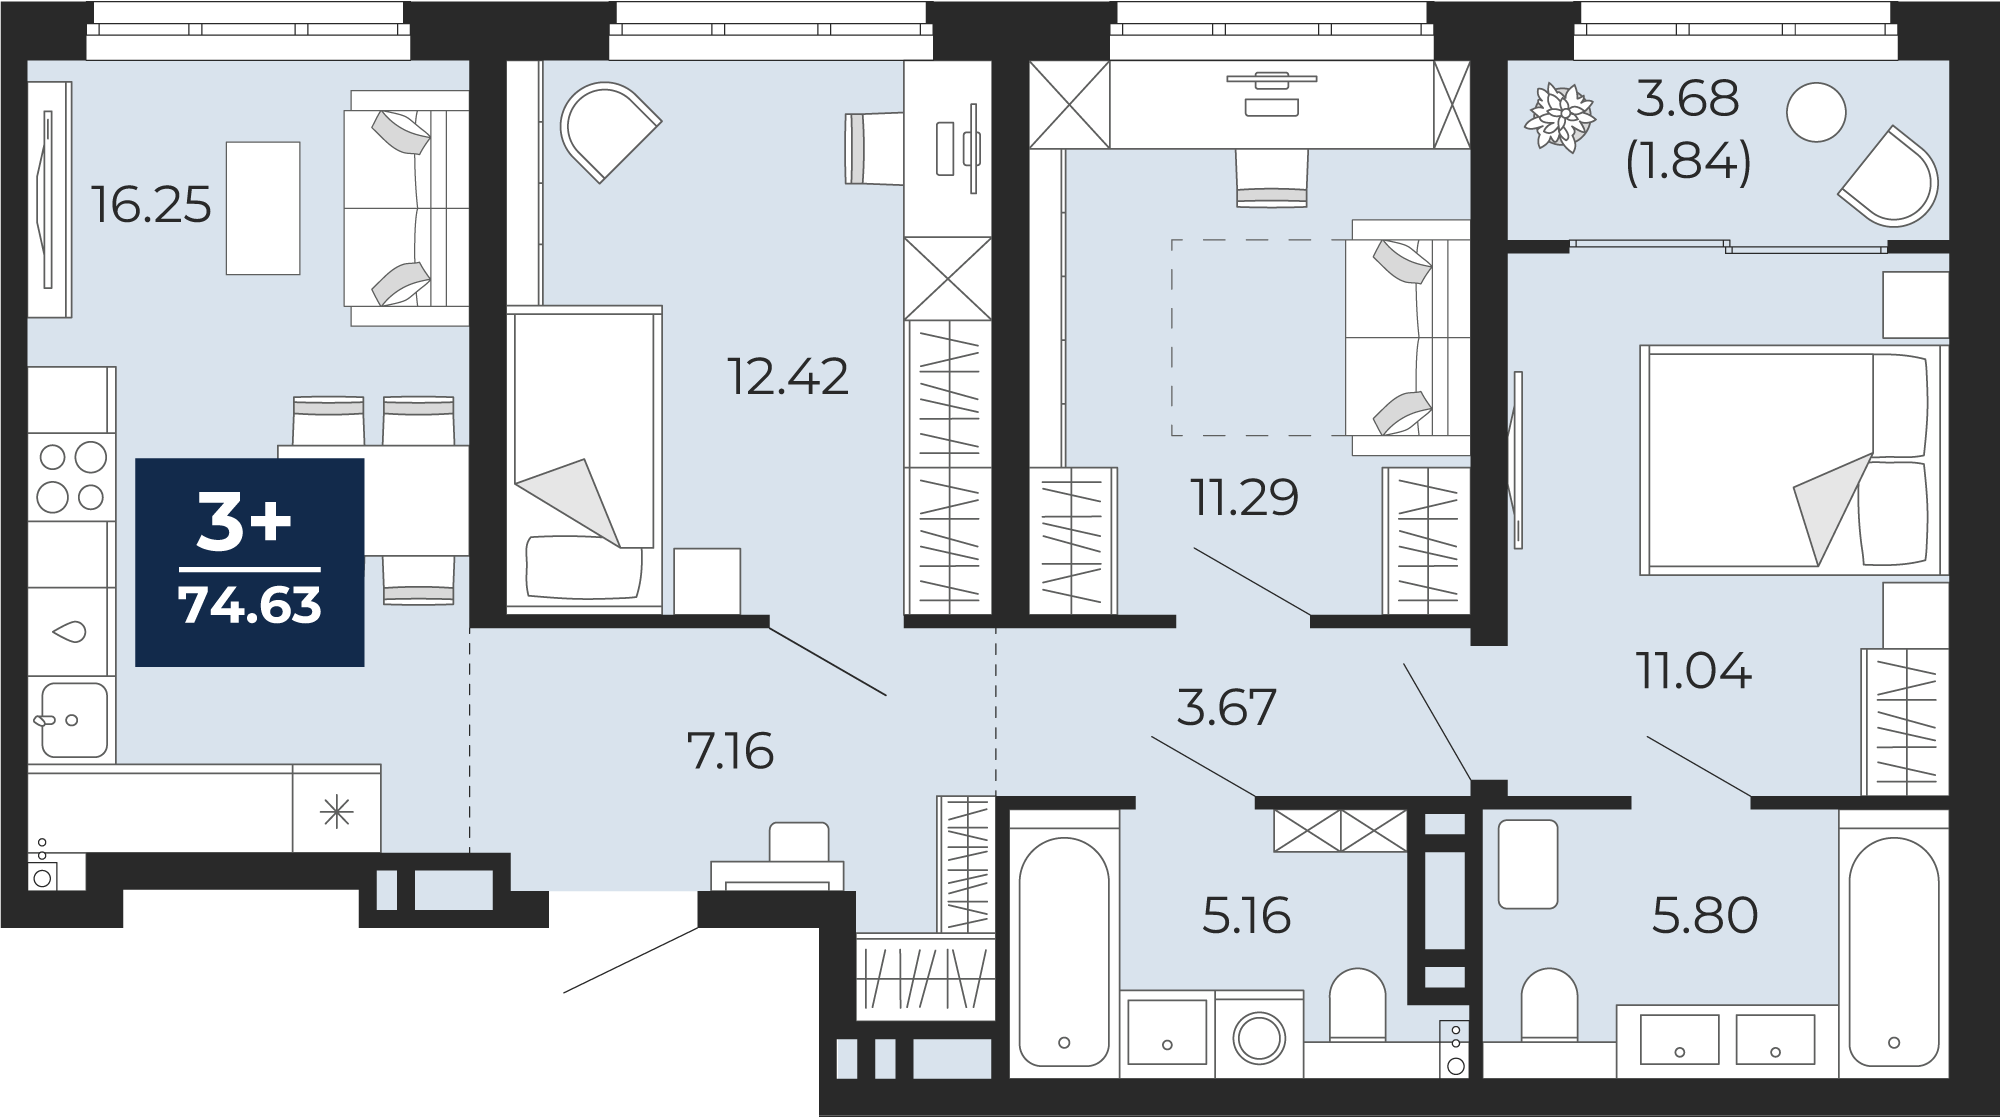 Квартира № 231, 3-комнатная, 74.63 кв. м, 5 этаж